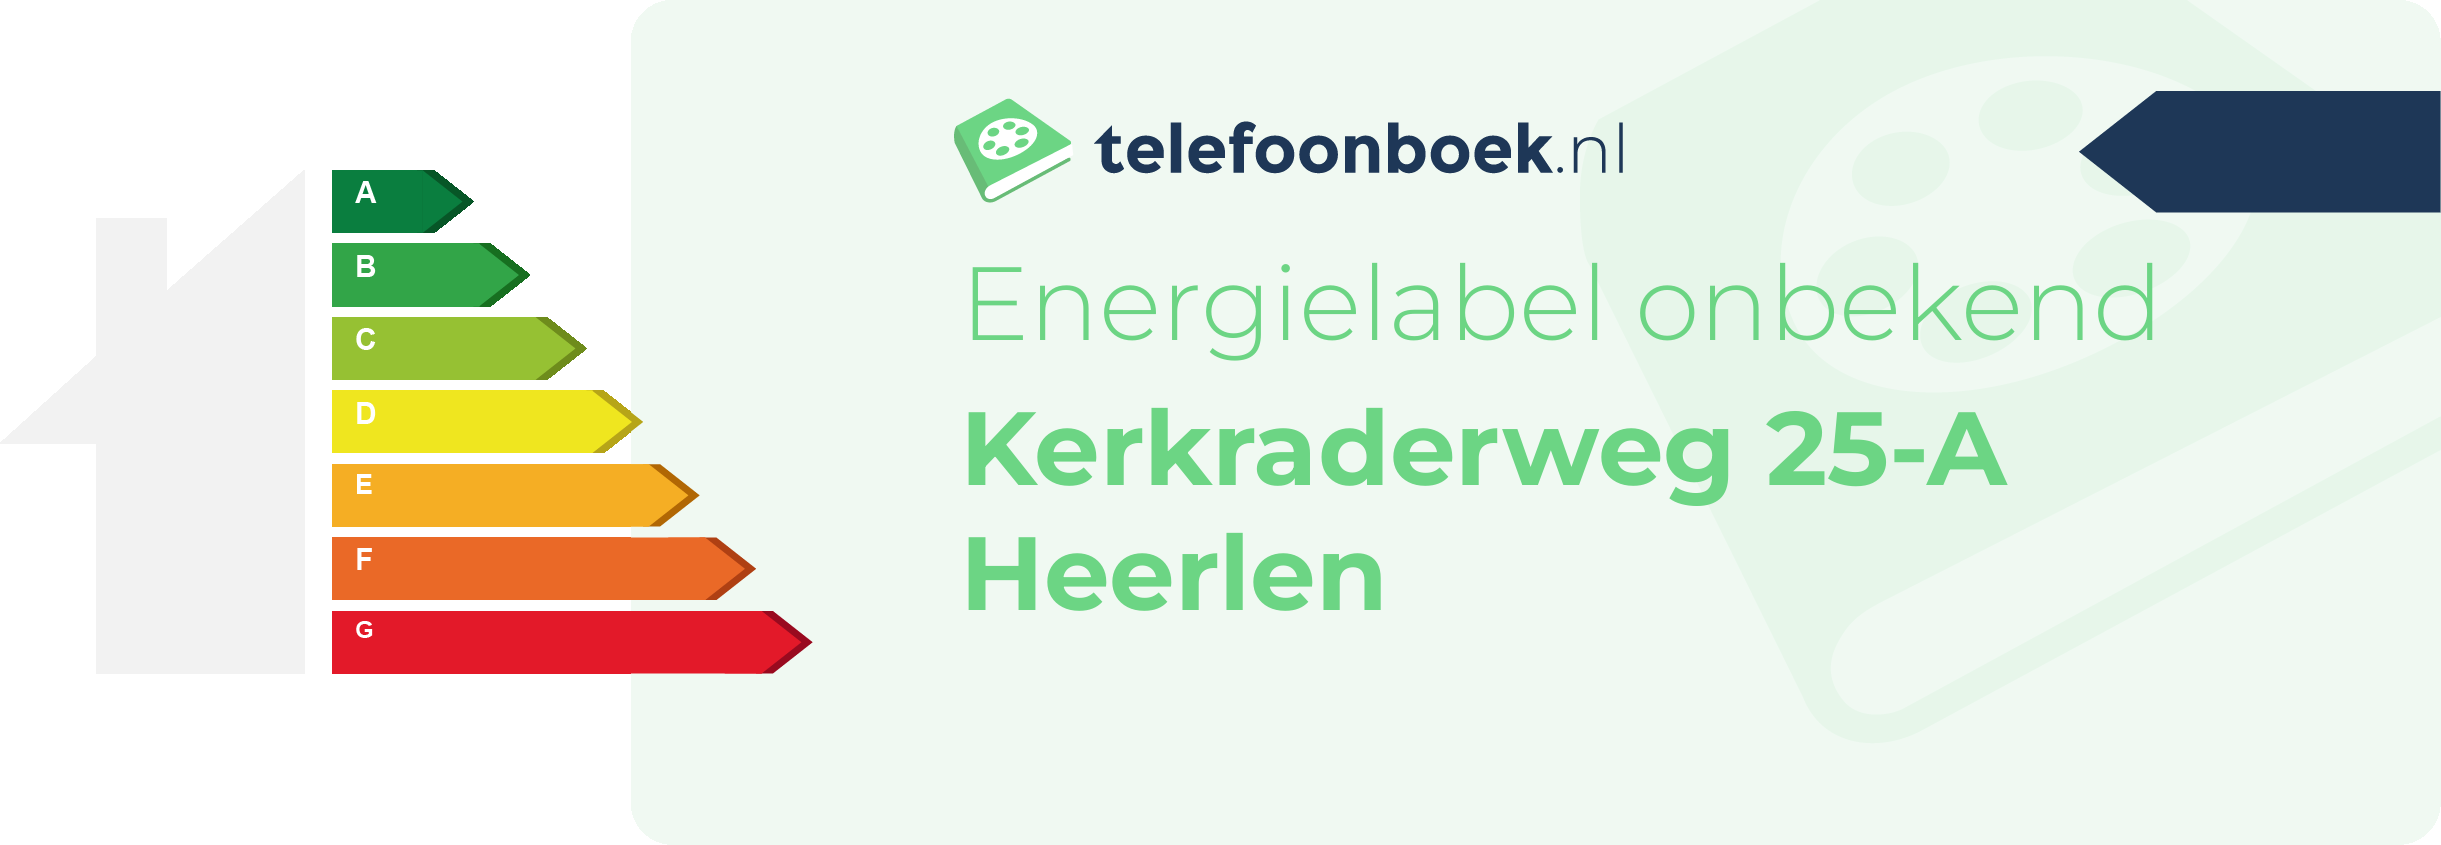 Energielabel Kerkraderweg 25-A Heerlen